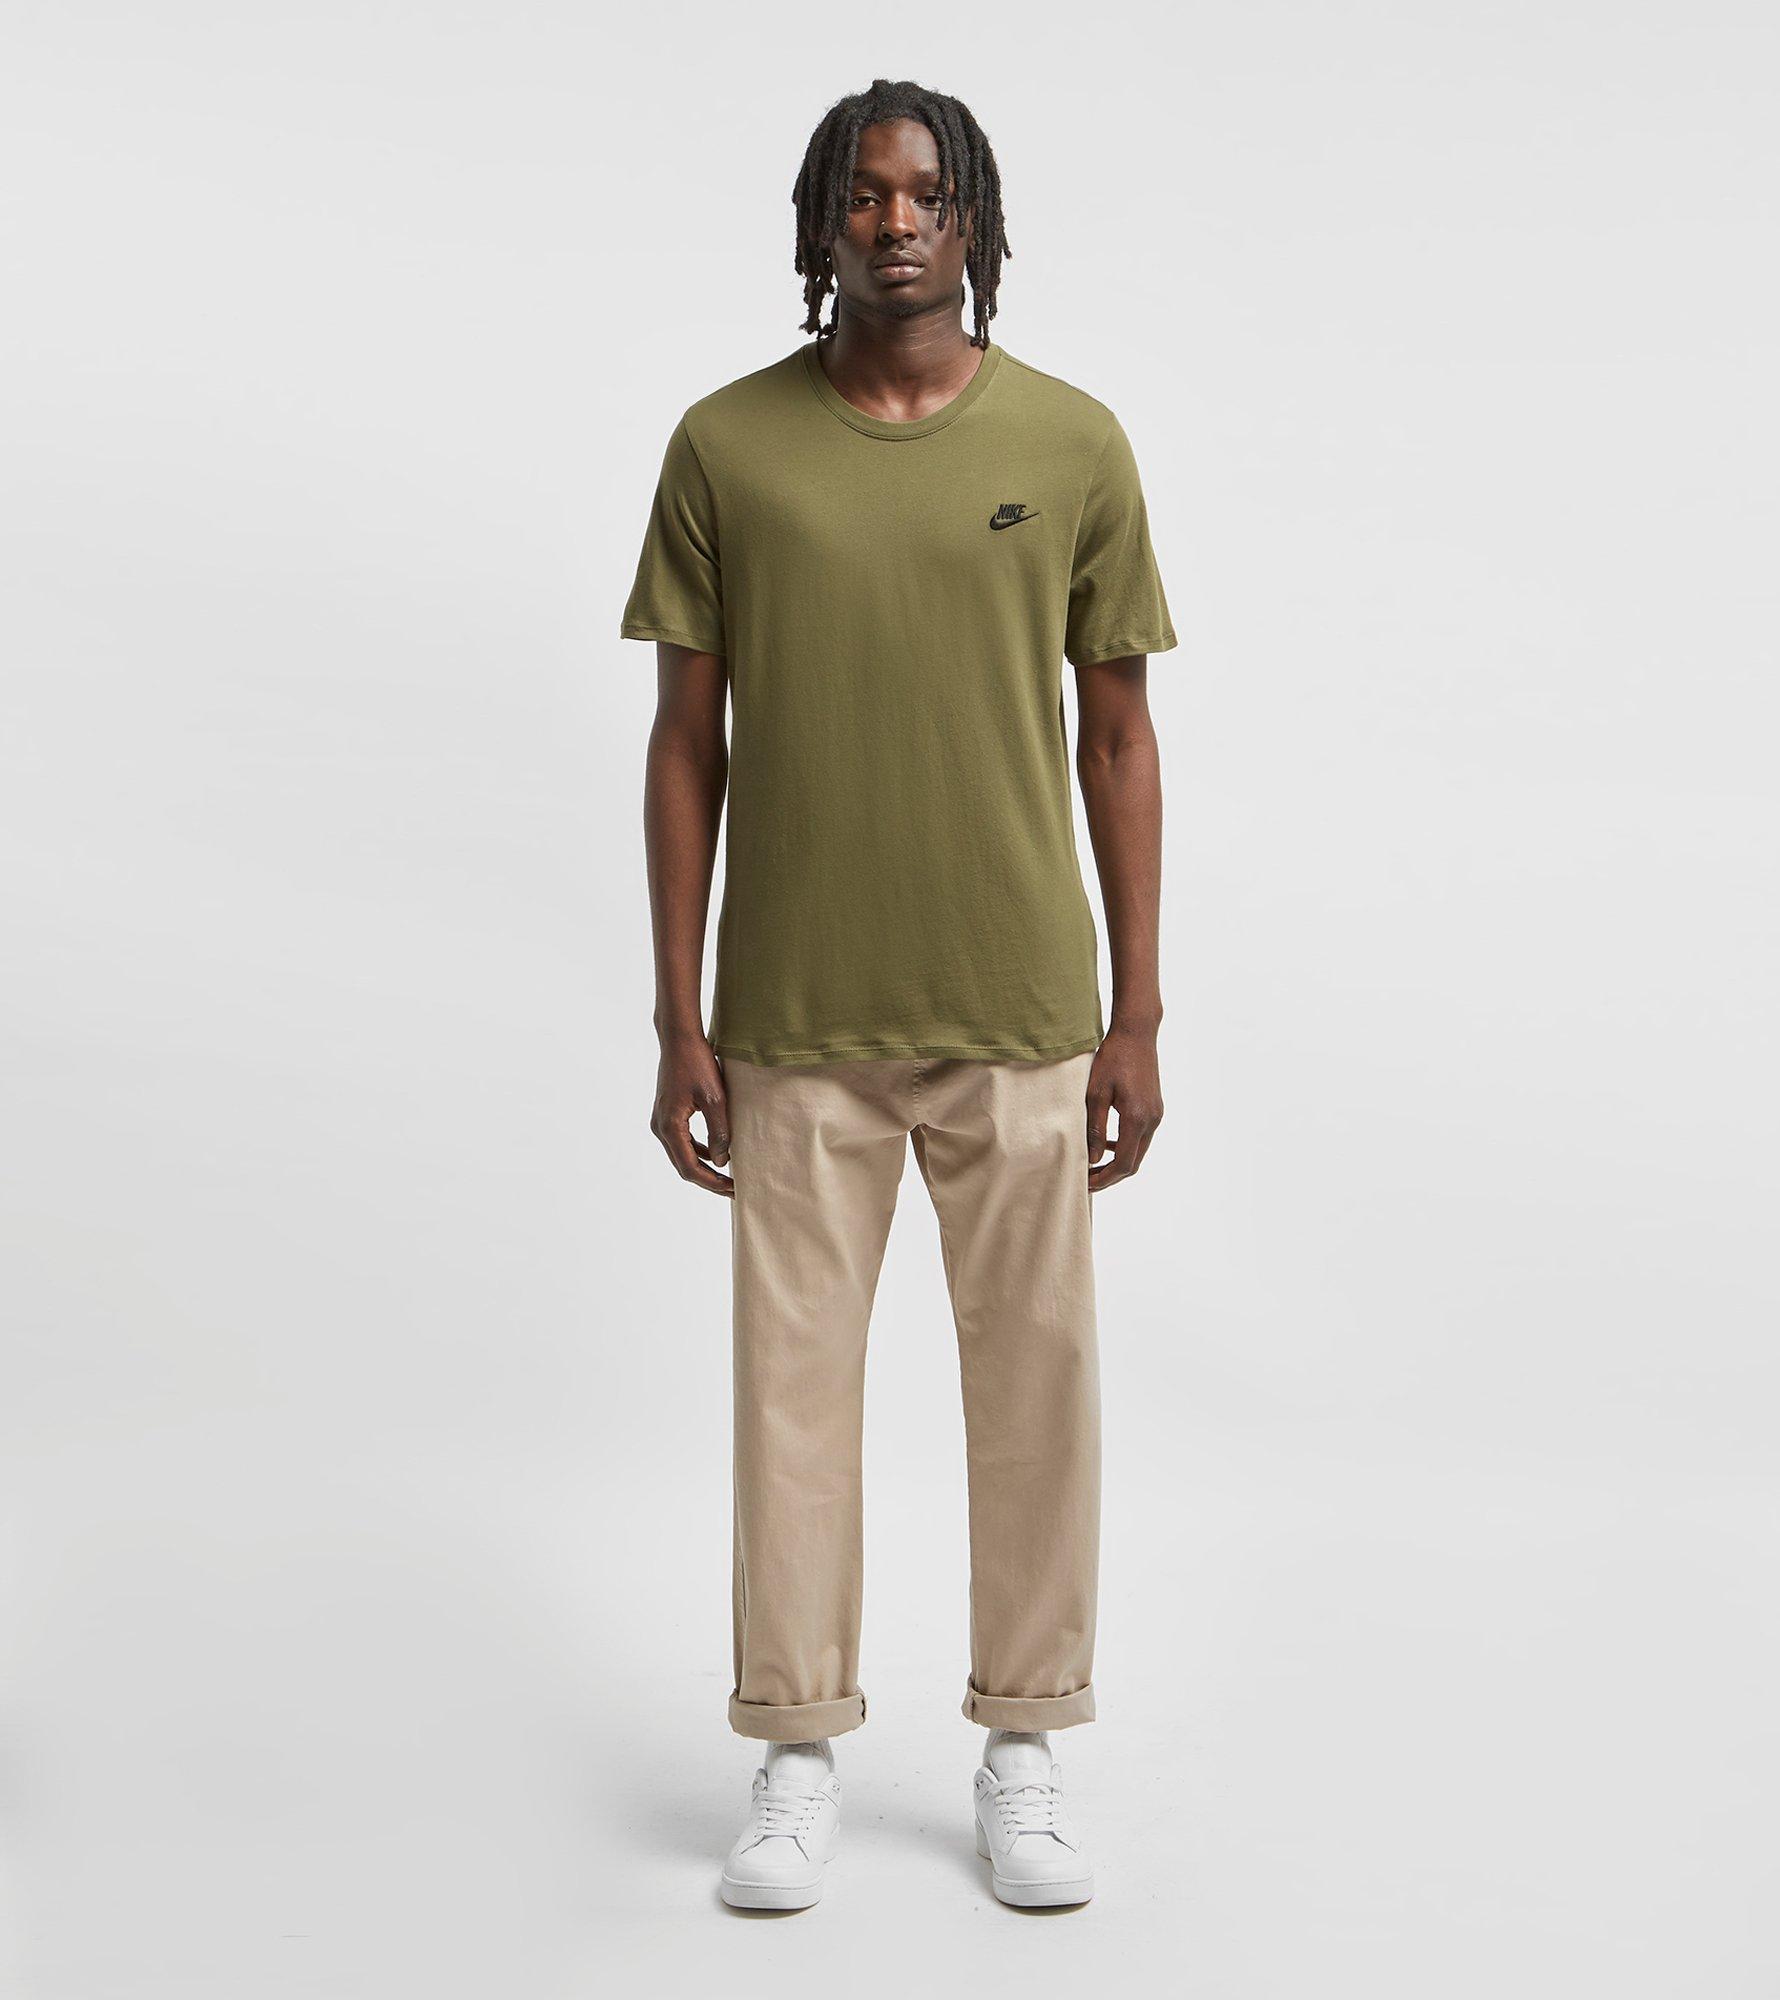 Nike Sportswear T-shirt in Green for Men - Lyst